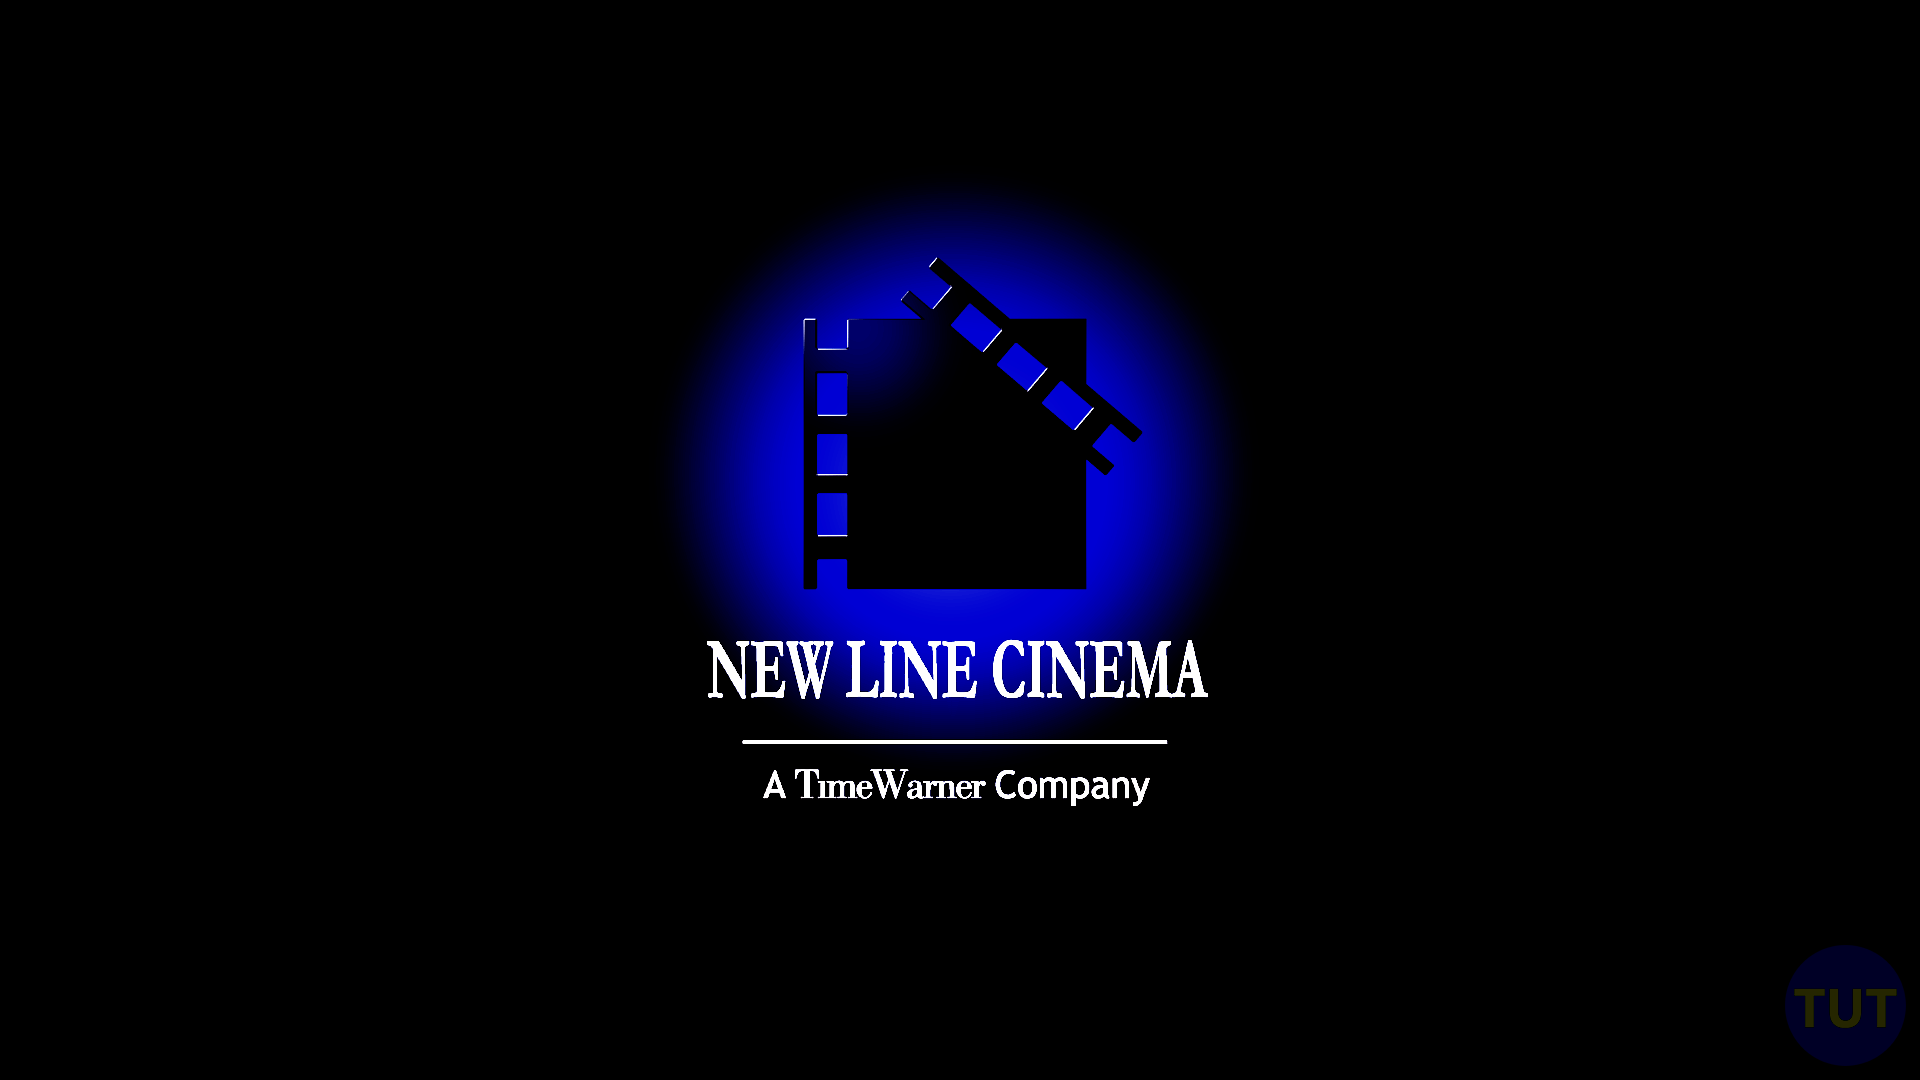 new line cinema